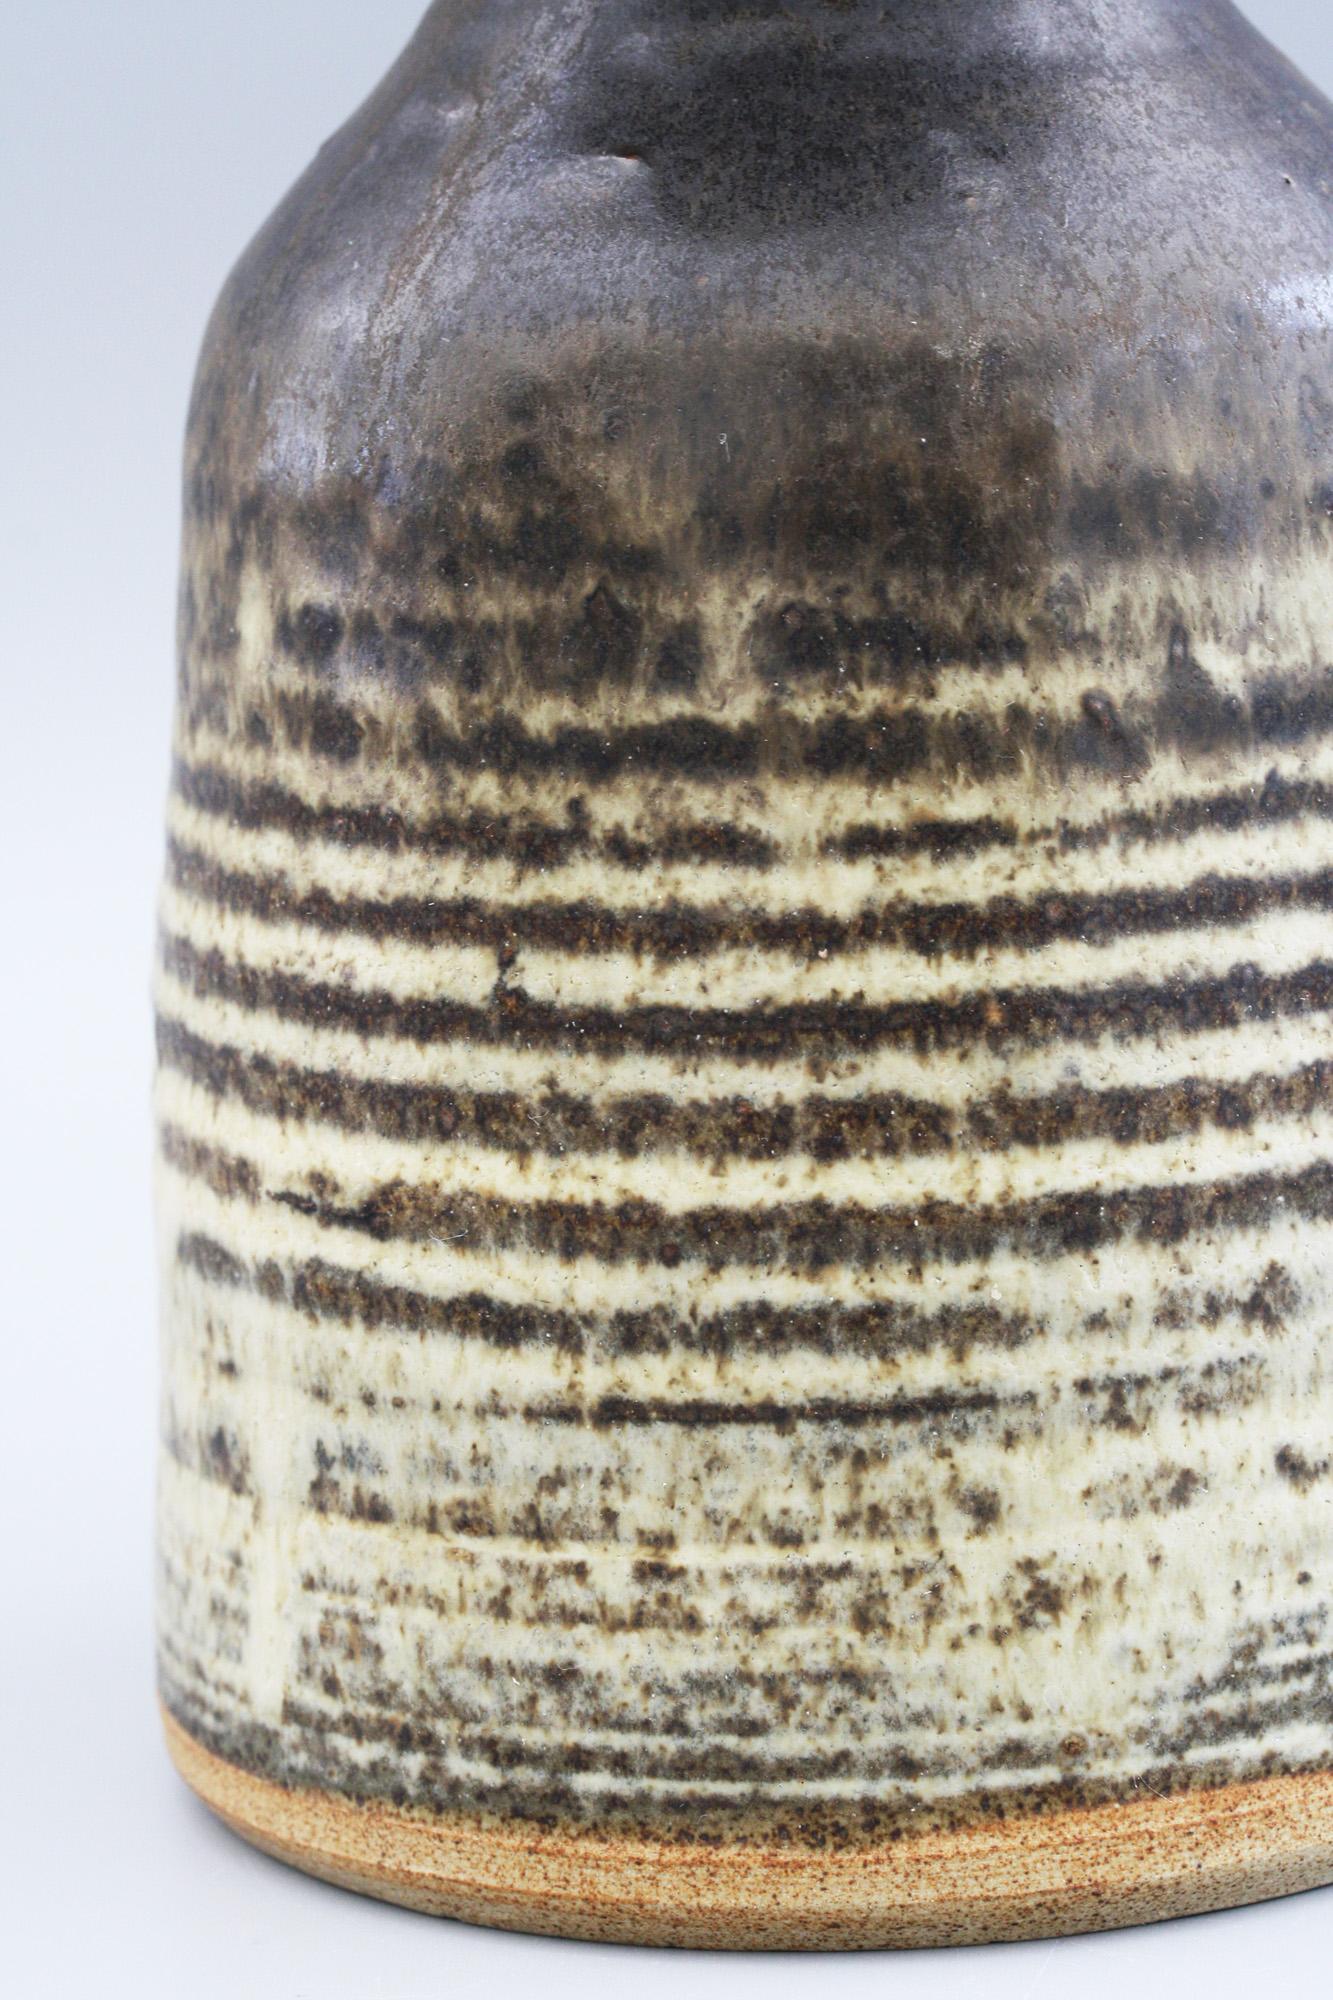 Eine stilvoll gedrehte und glasierte Vase aus Steingut mit geripptem Korpus, die Susan Bennett (geb. 1954) zugeschrieben und auf 1977 datiert wird. Die Vase hat einen glockenförmigen Körper mit einem breiten, flachen, abgerundeten und unglasierten